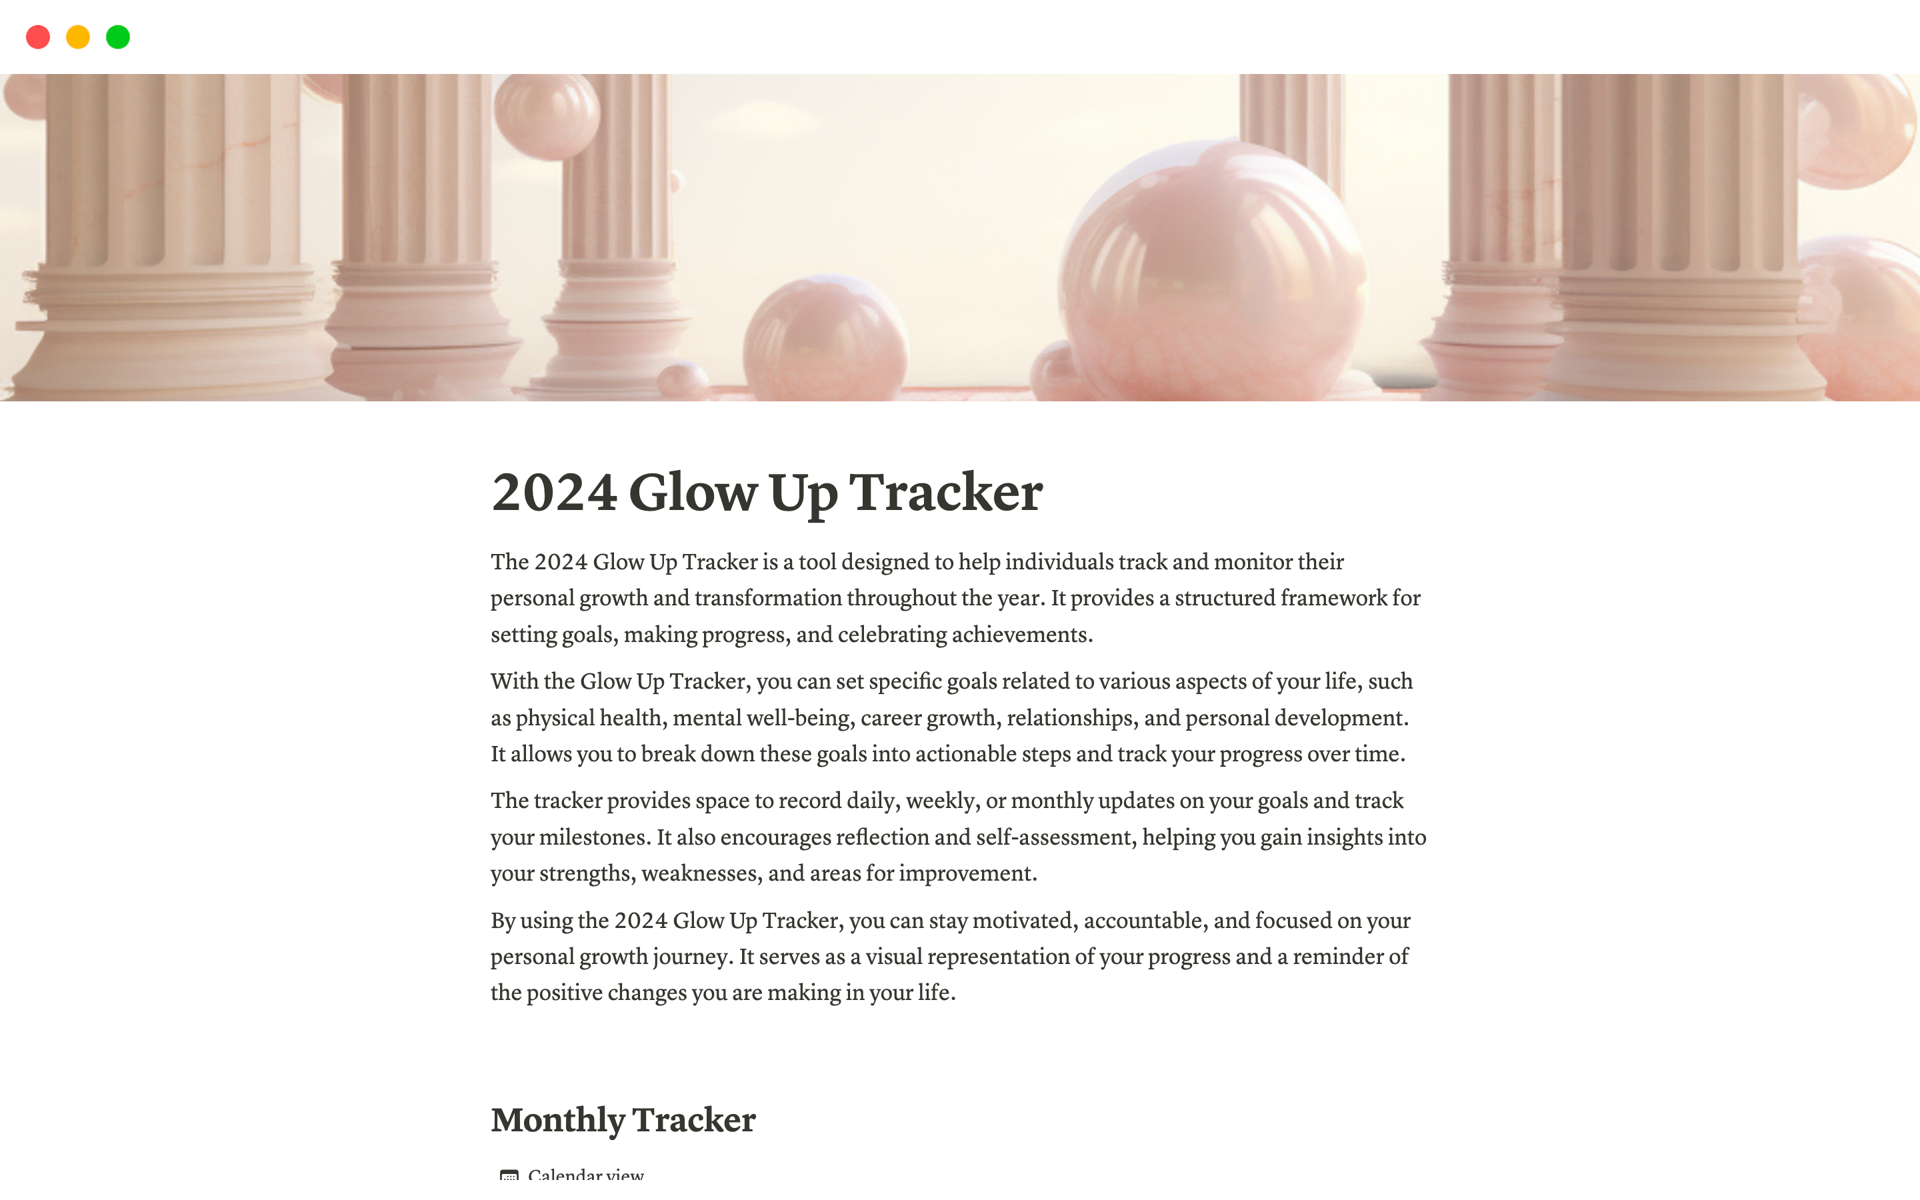 En förhandsgranskning av mallen för 2024 Glow Up Tracker